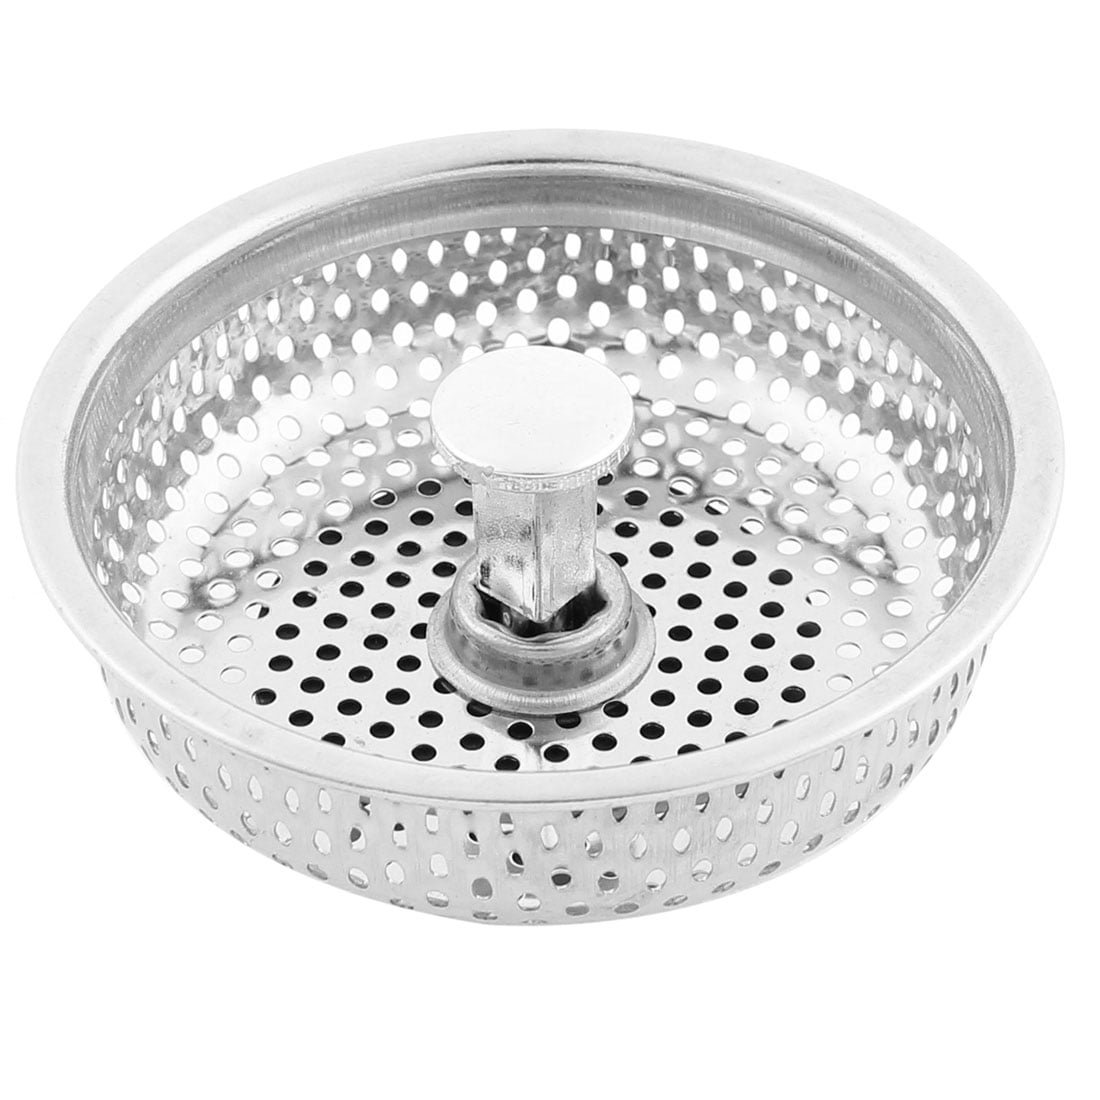 Kitchen Strainer Sink Basket Waste Healthy Stainless Steel Filter 80mm Dia 